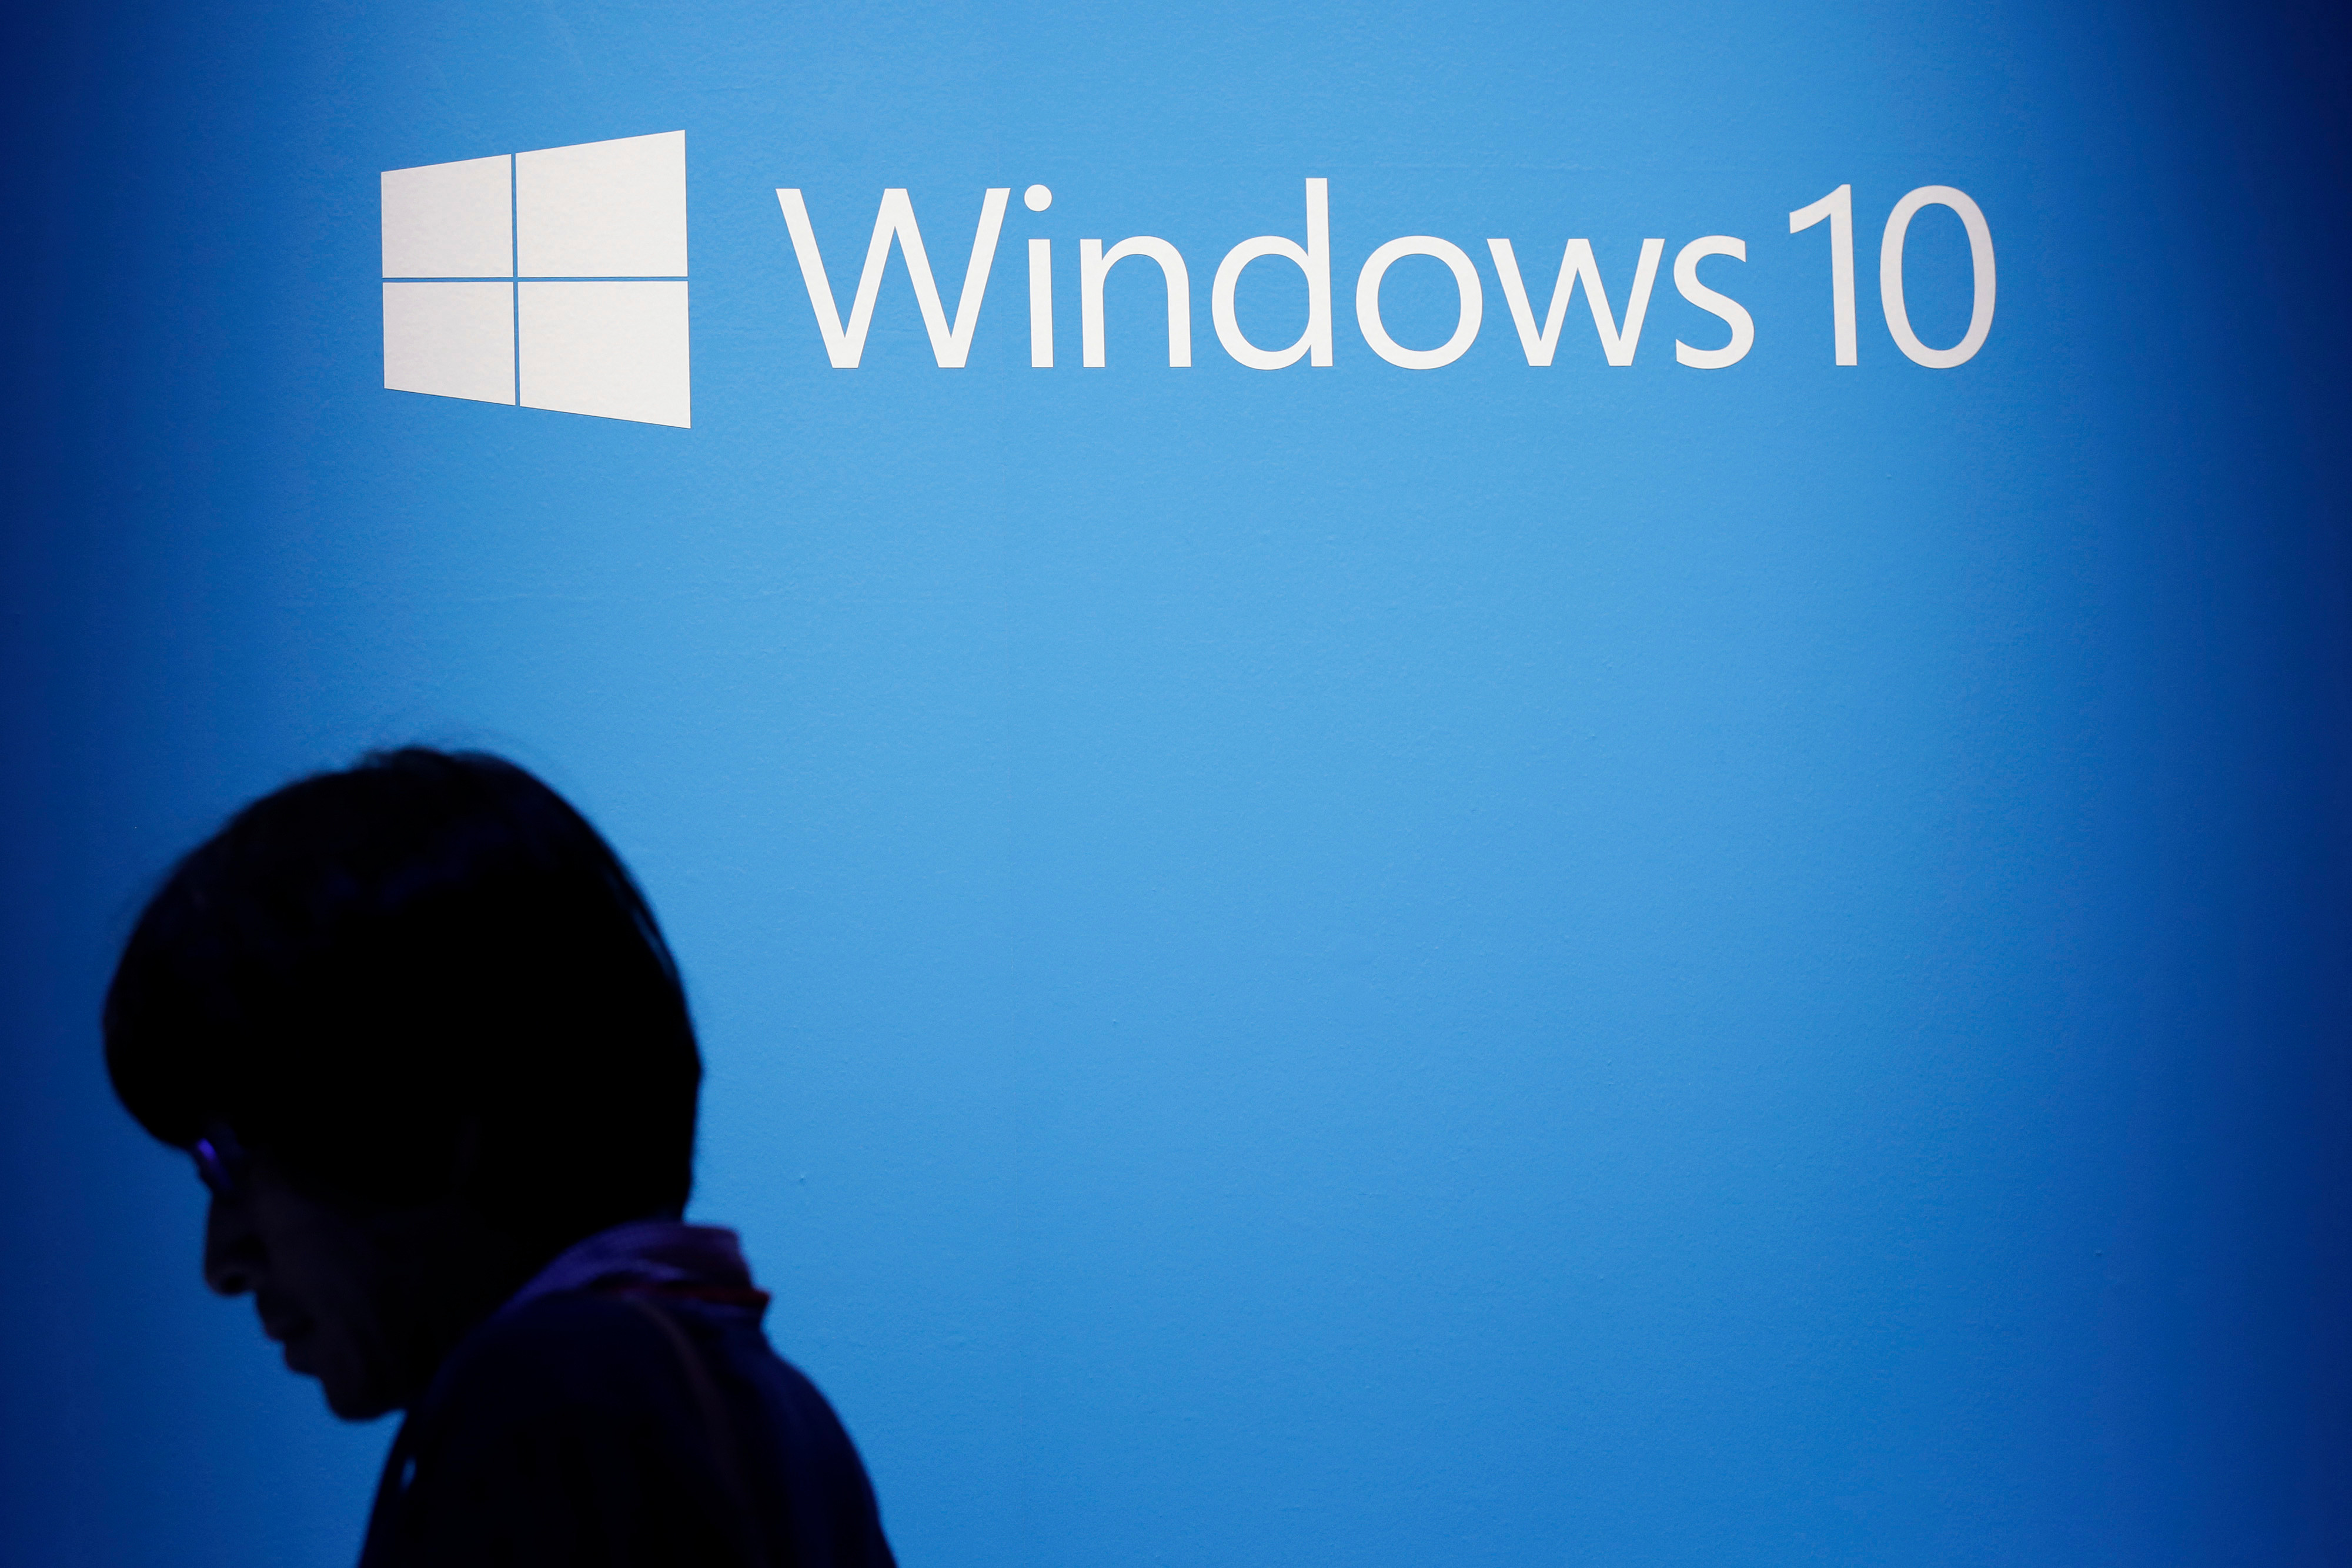   Một lỗ hổng bảo mật lớn trong Windows 10 đã được NSA tiếp xúc